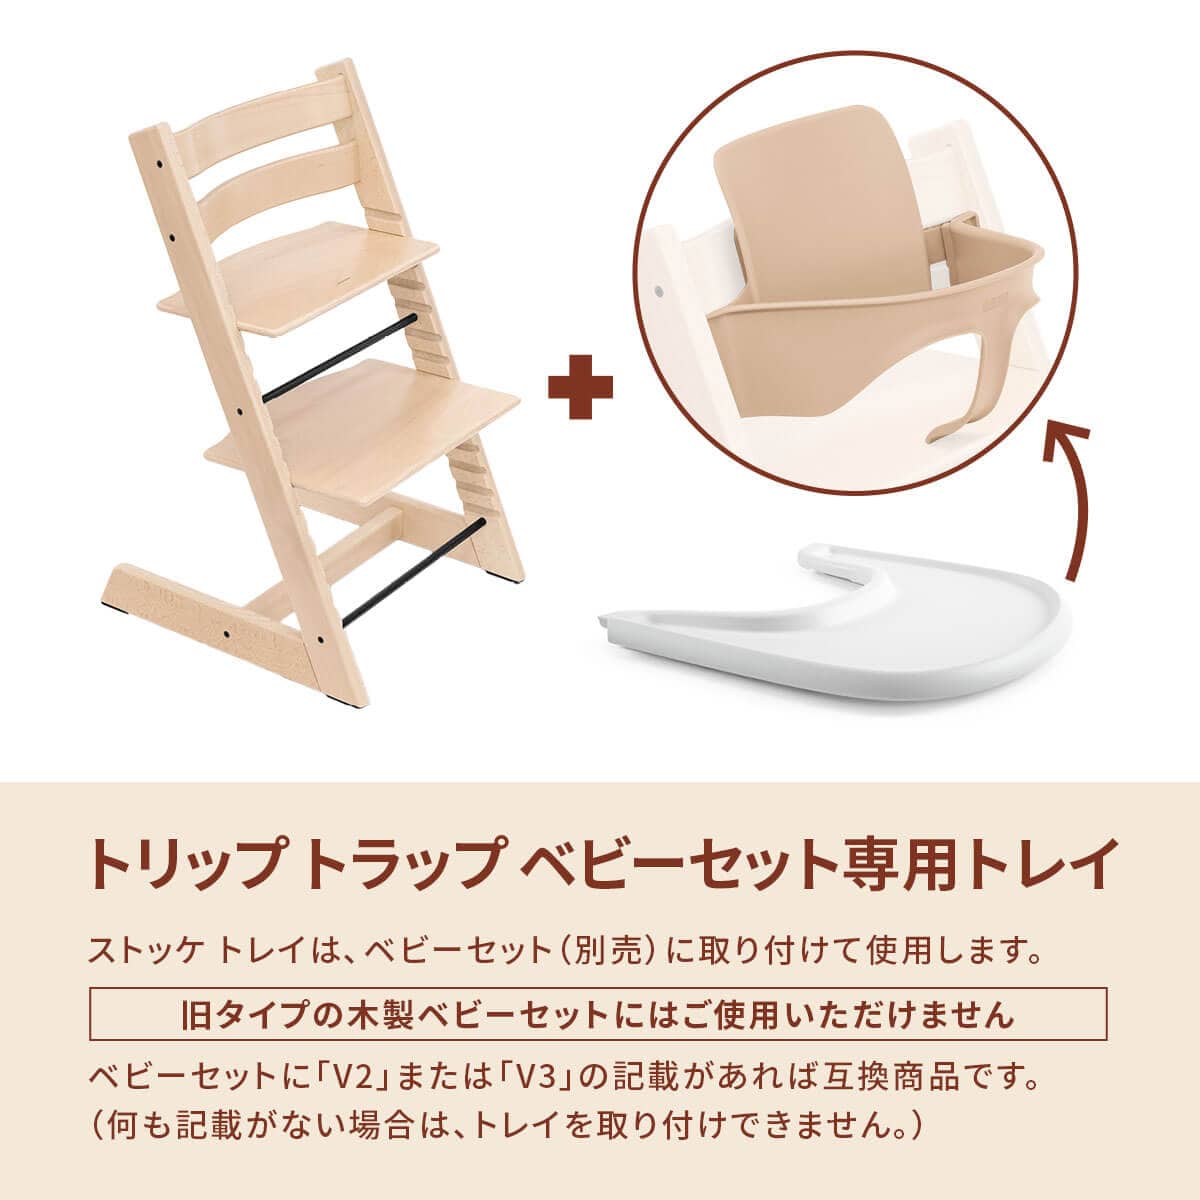 【送料無料】ストッケ トリップトラップ  ベビーセット・トレイ付き 清掃・磨き幼児用木製椅子